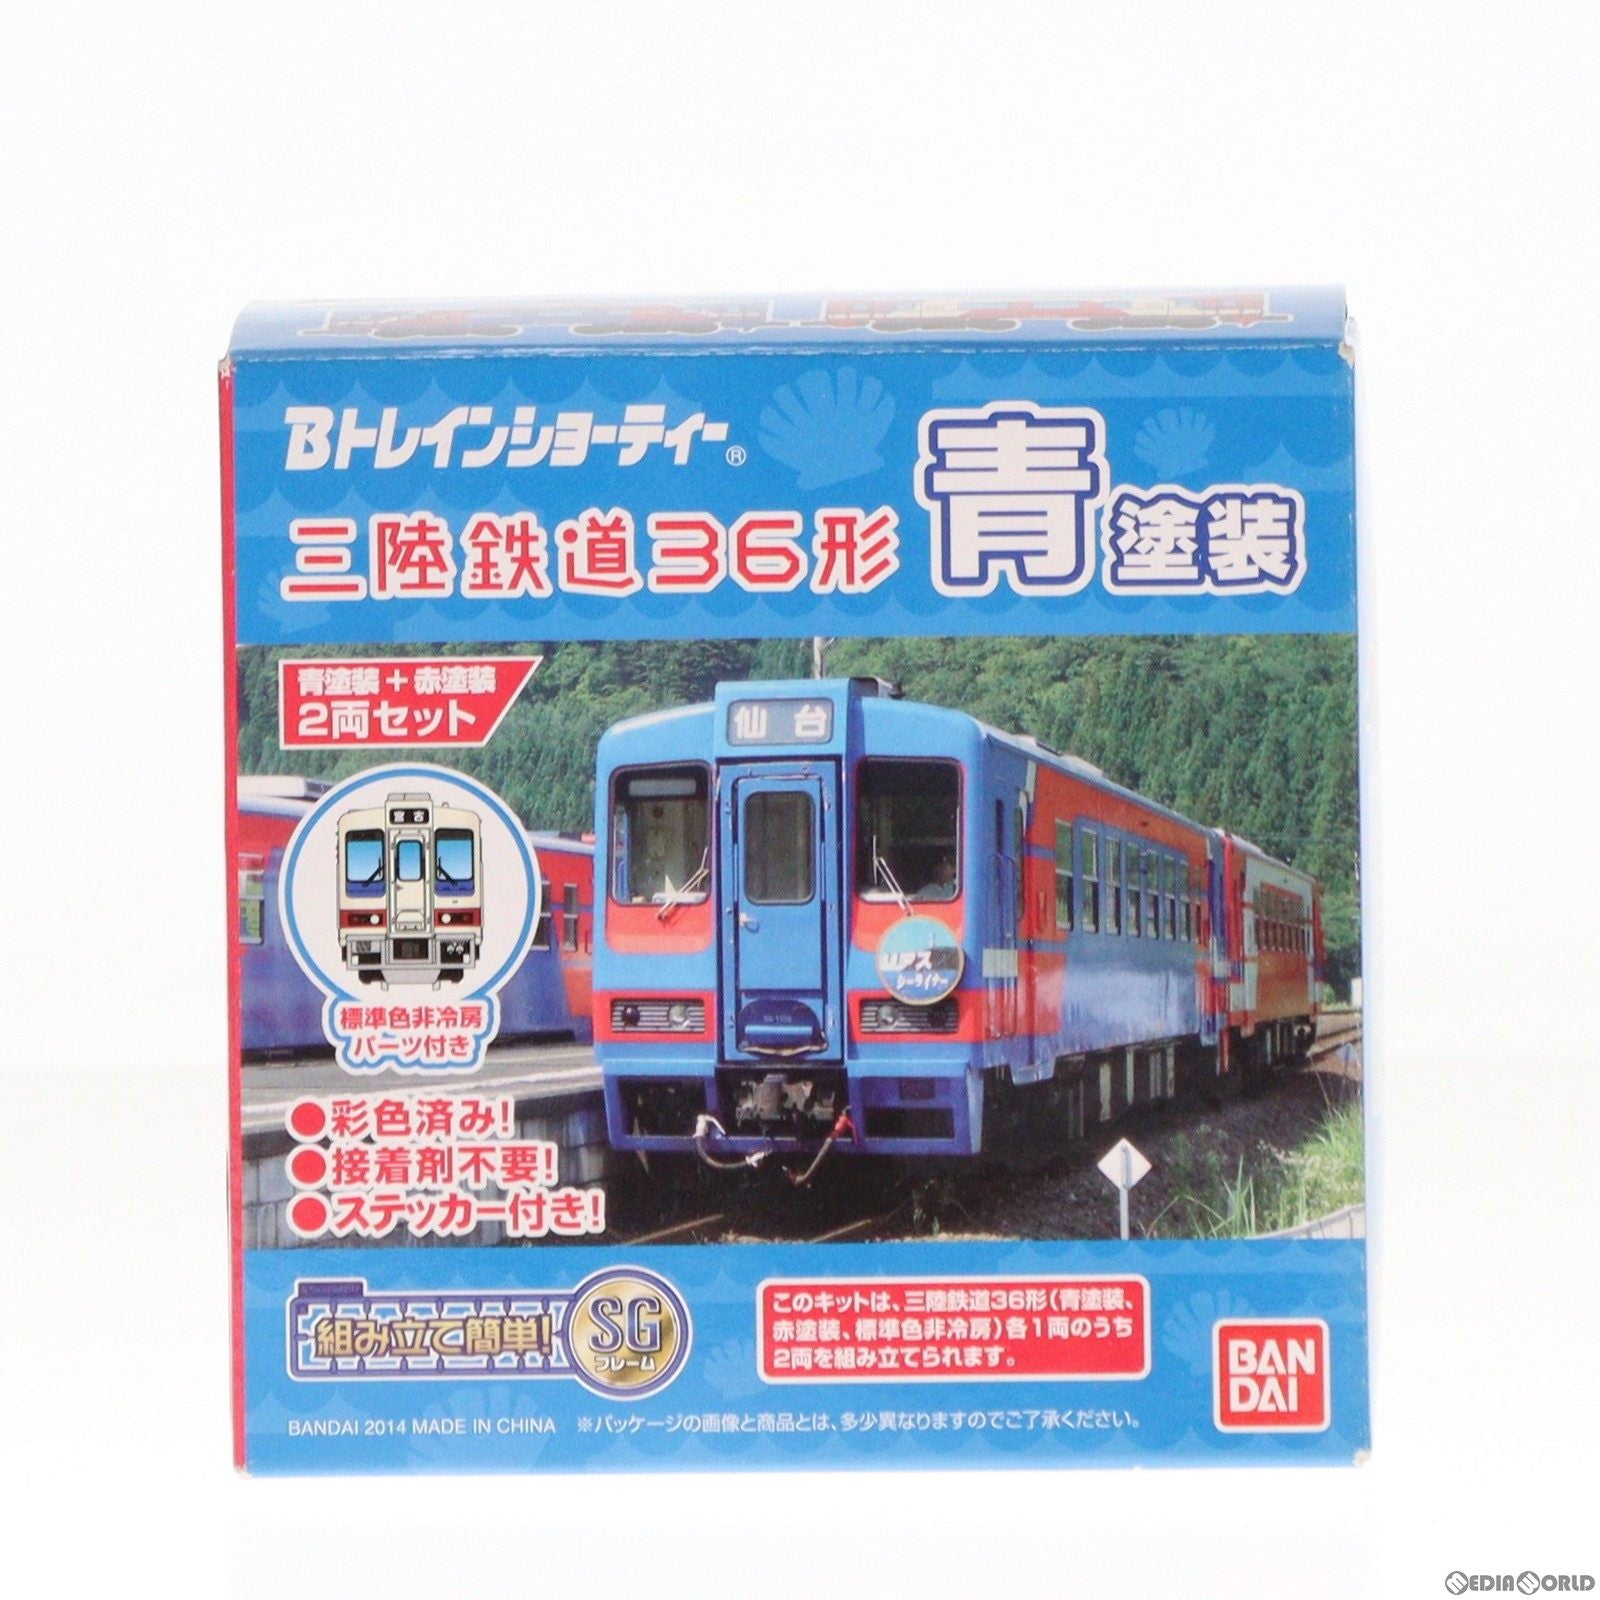 【中古即納】[RWM]814739 Bトレインショーティー 三陸鉄道36形 青塗装/赤塗装 2両セット 組み立てキット Nゲージ 鉄道模型(20140321)